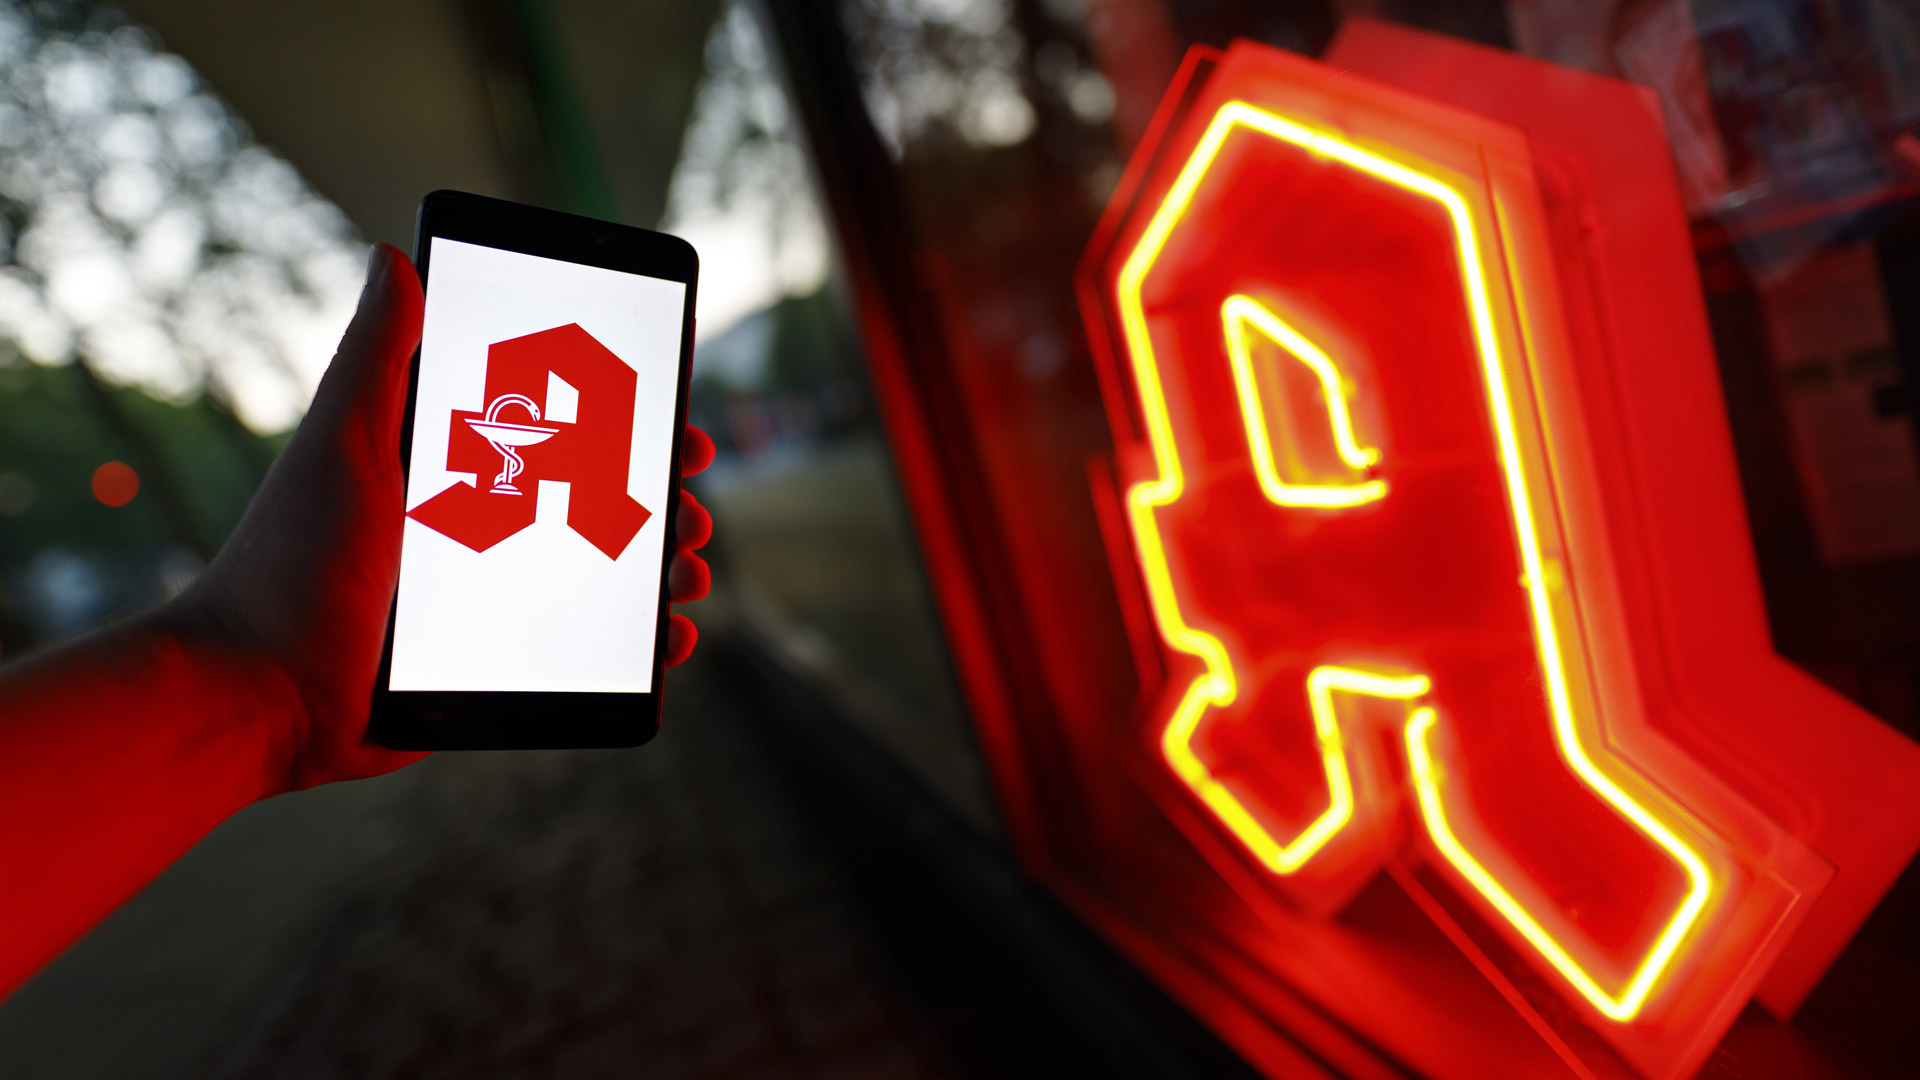 Leuchtendes Apotheken-Logo und rotes Apotheken-A auf einem Smartphone | 